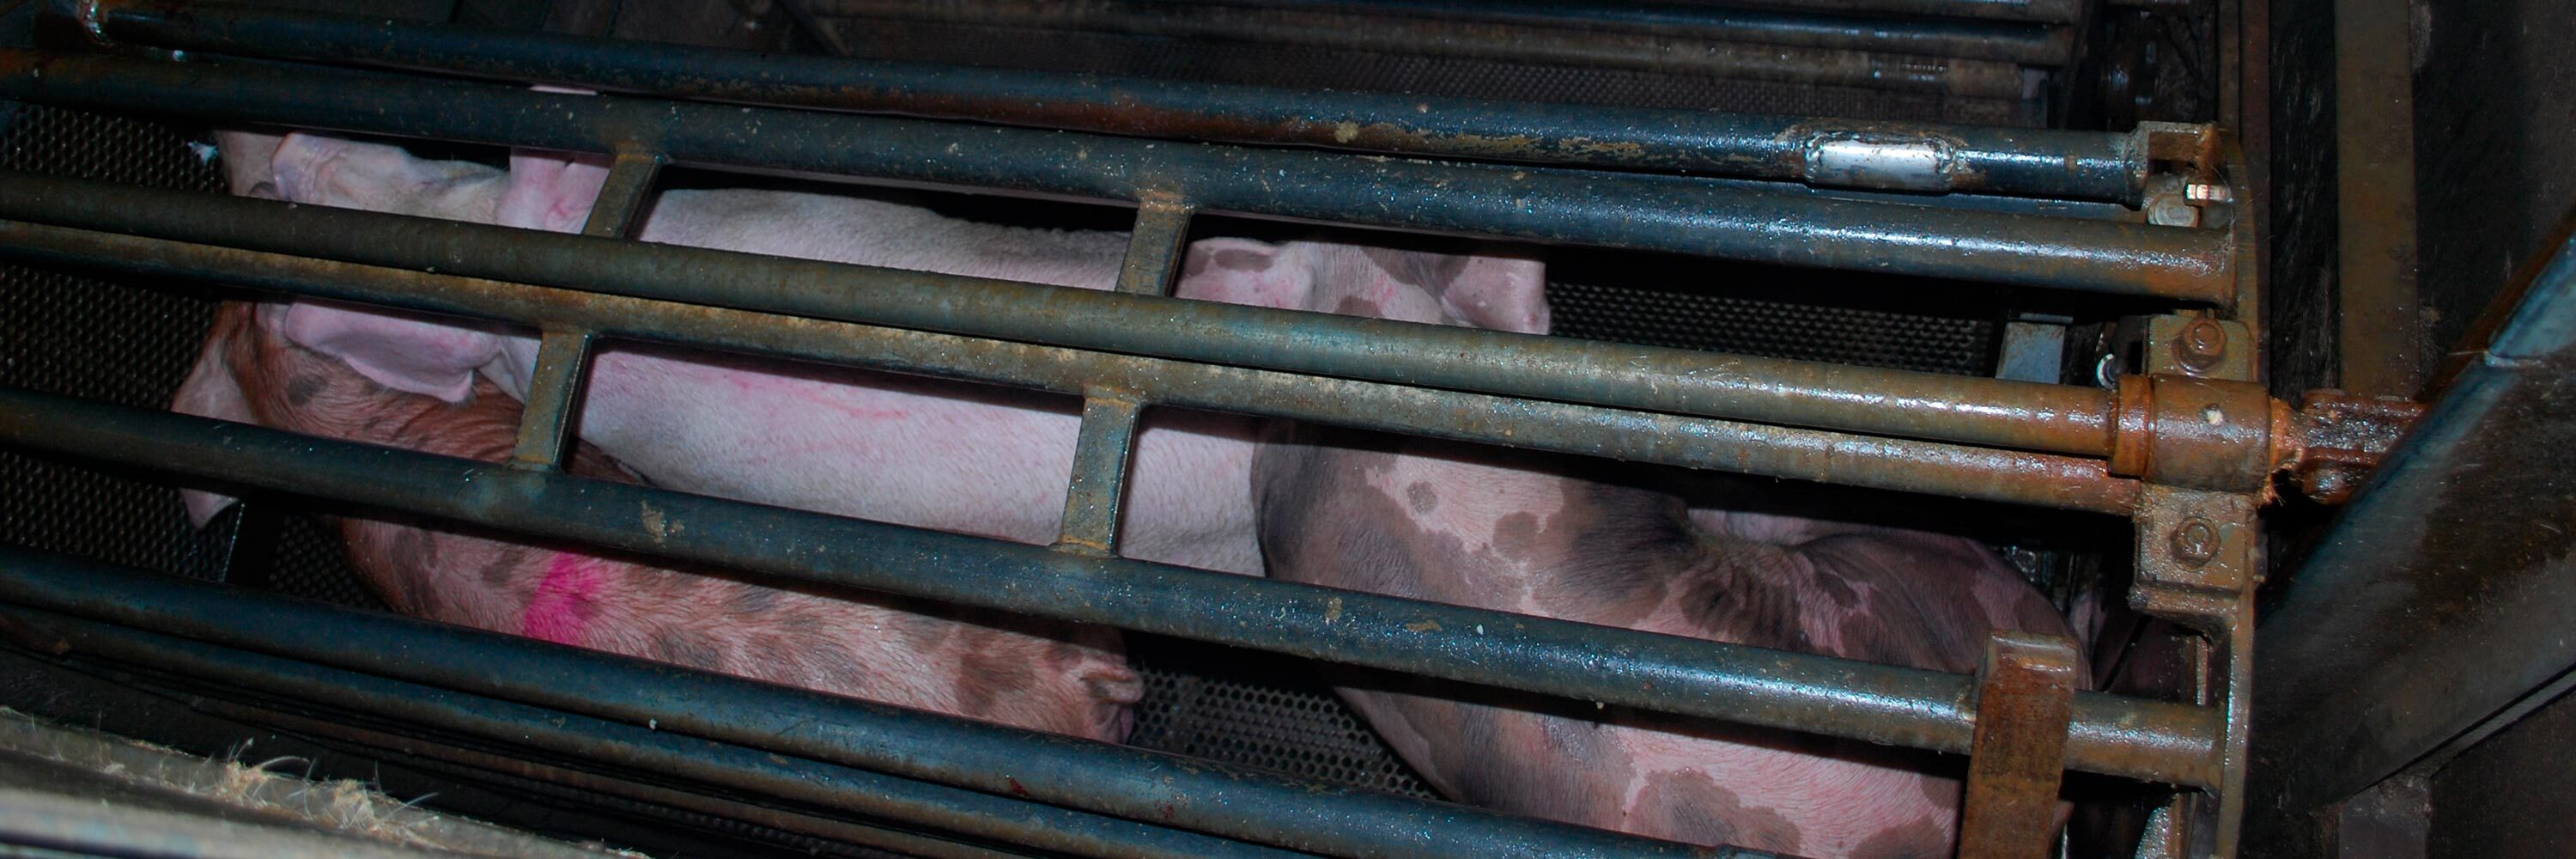 Cerdos dentro de la góndola que les llevará al foso donde serán aturdidos con CO2